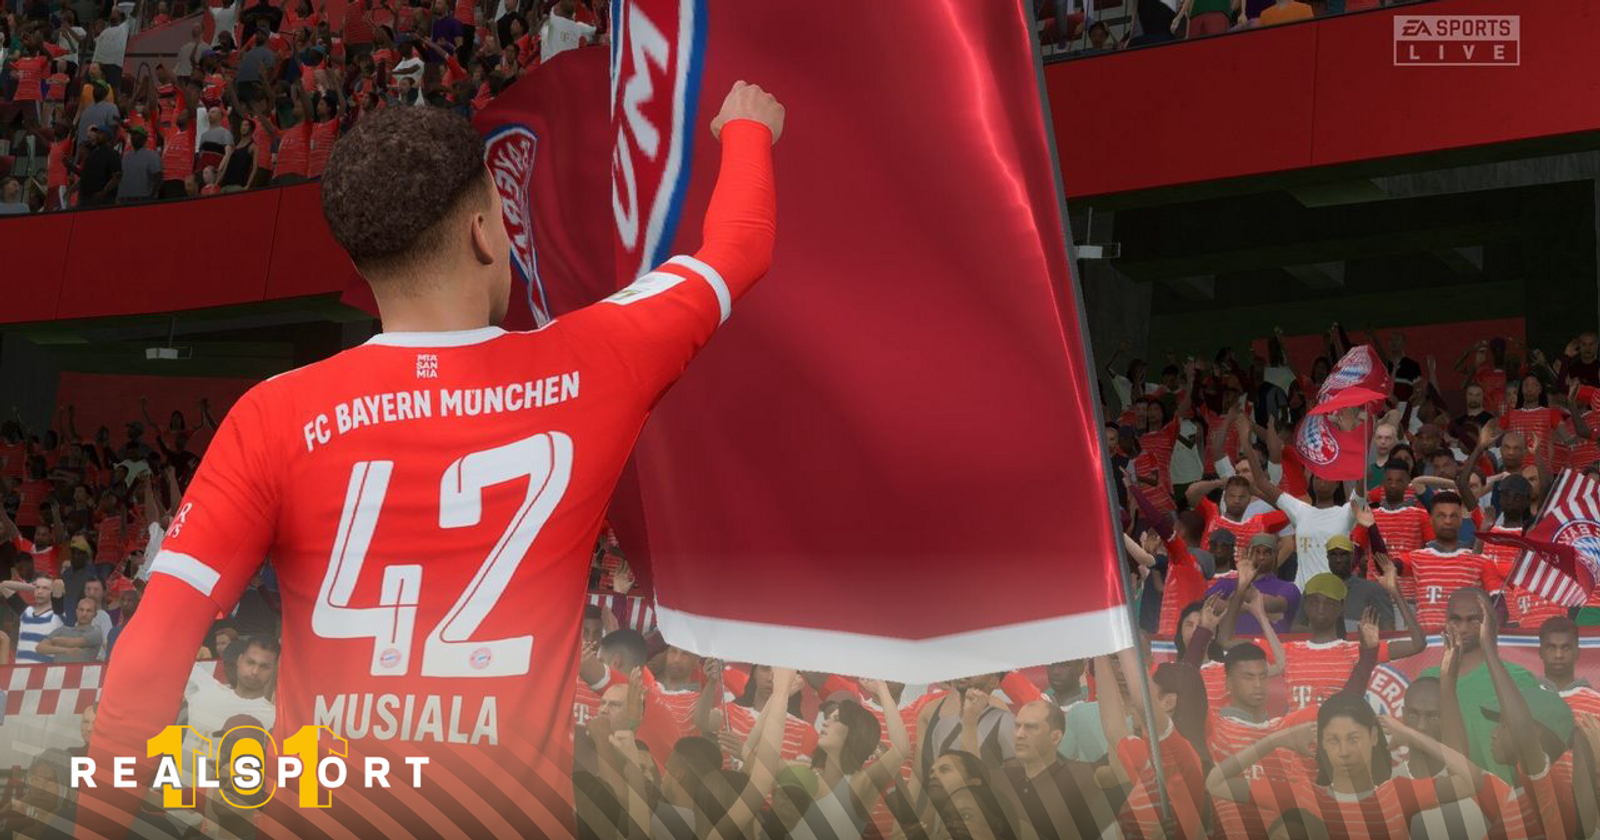 Análise Arkade: FIFA 23 mantém seu legado de qualidade e poucas mudanças -  Arkade